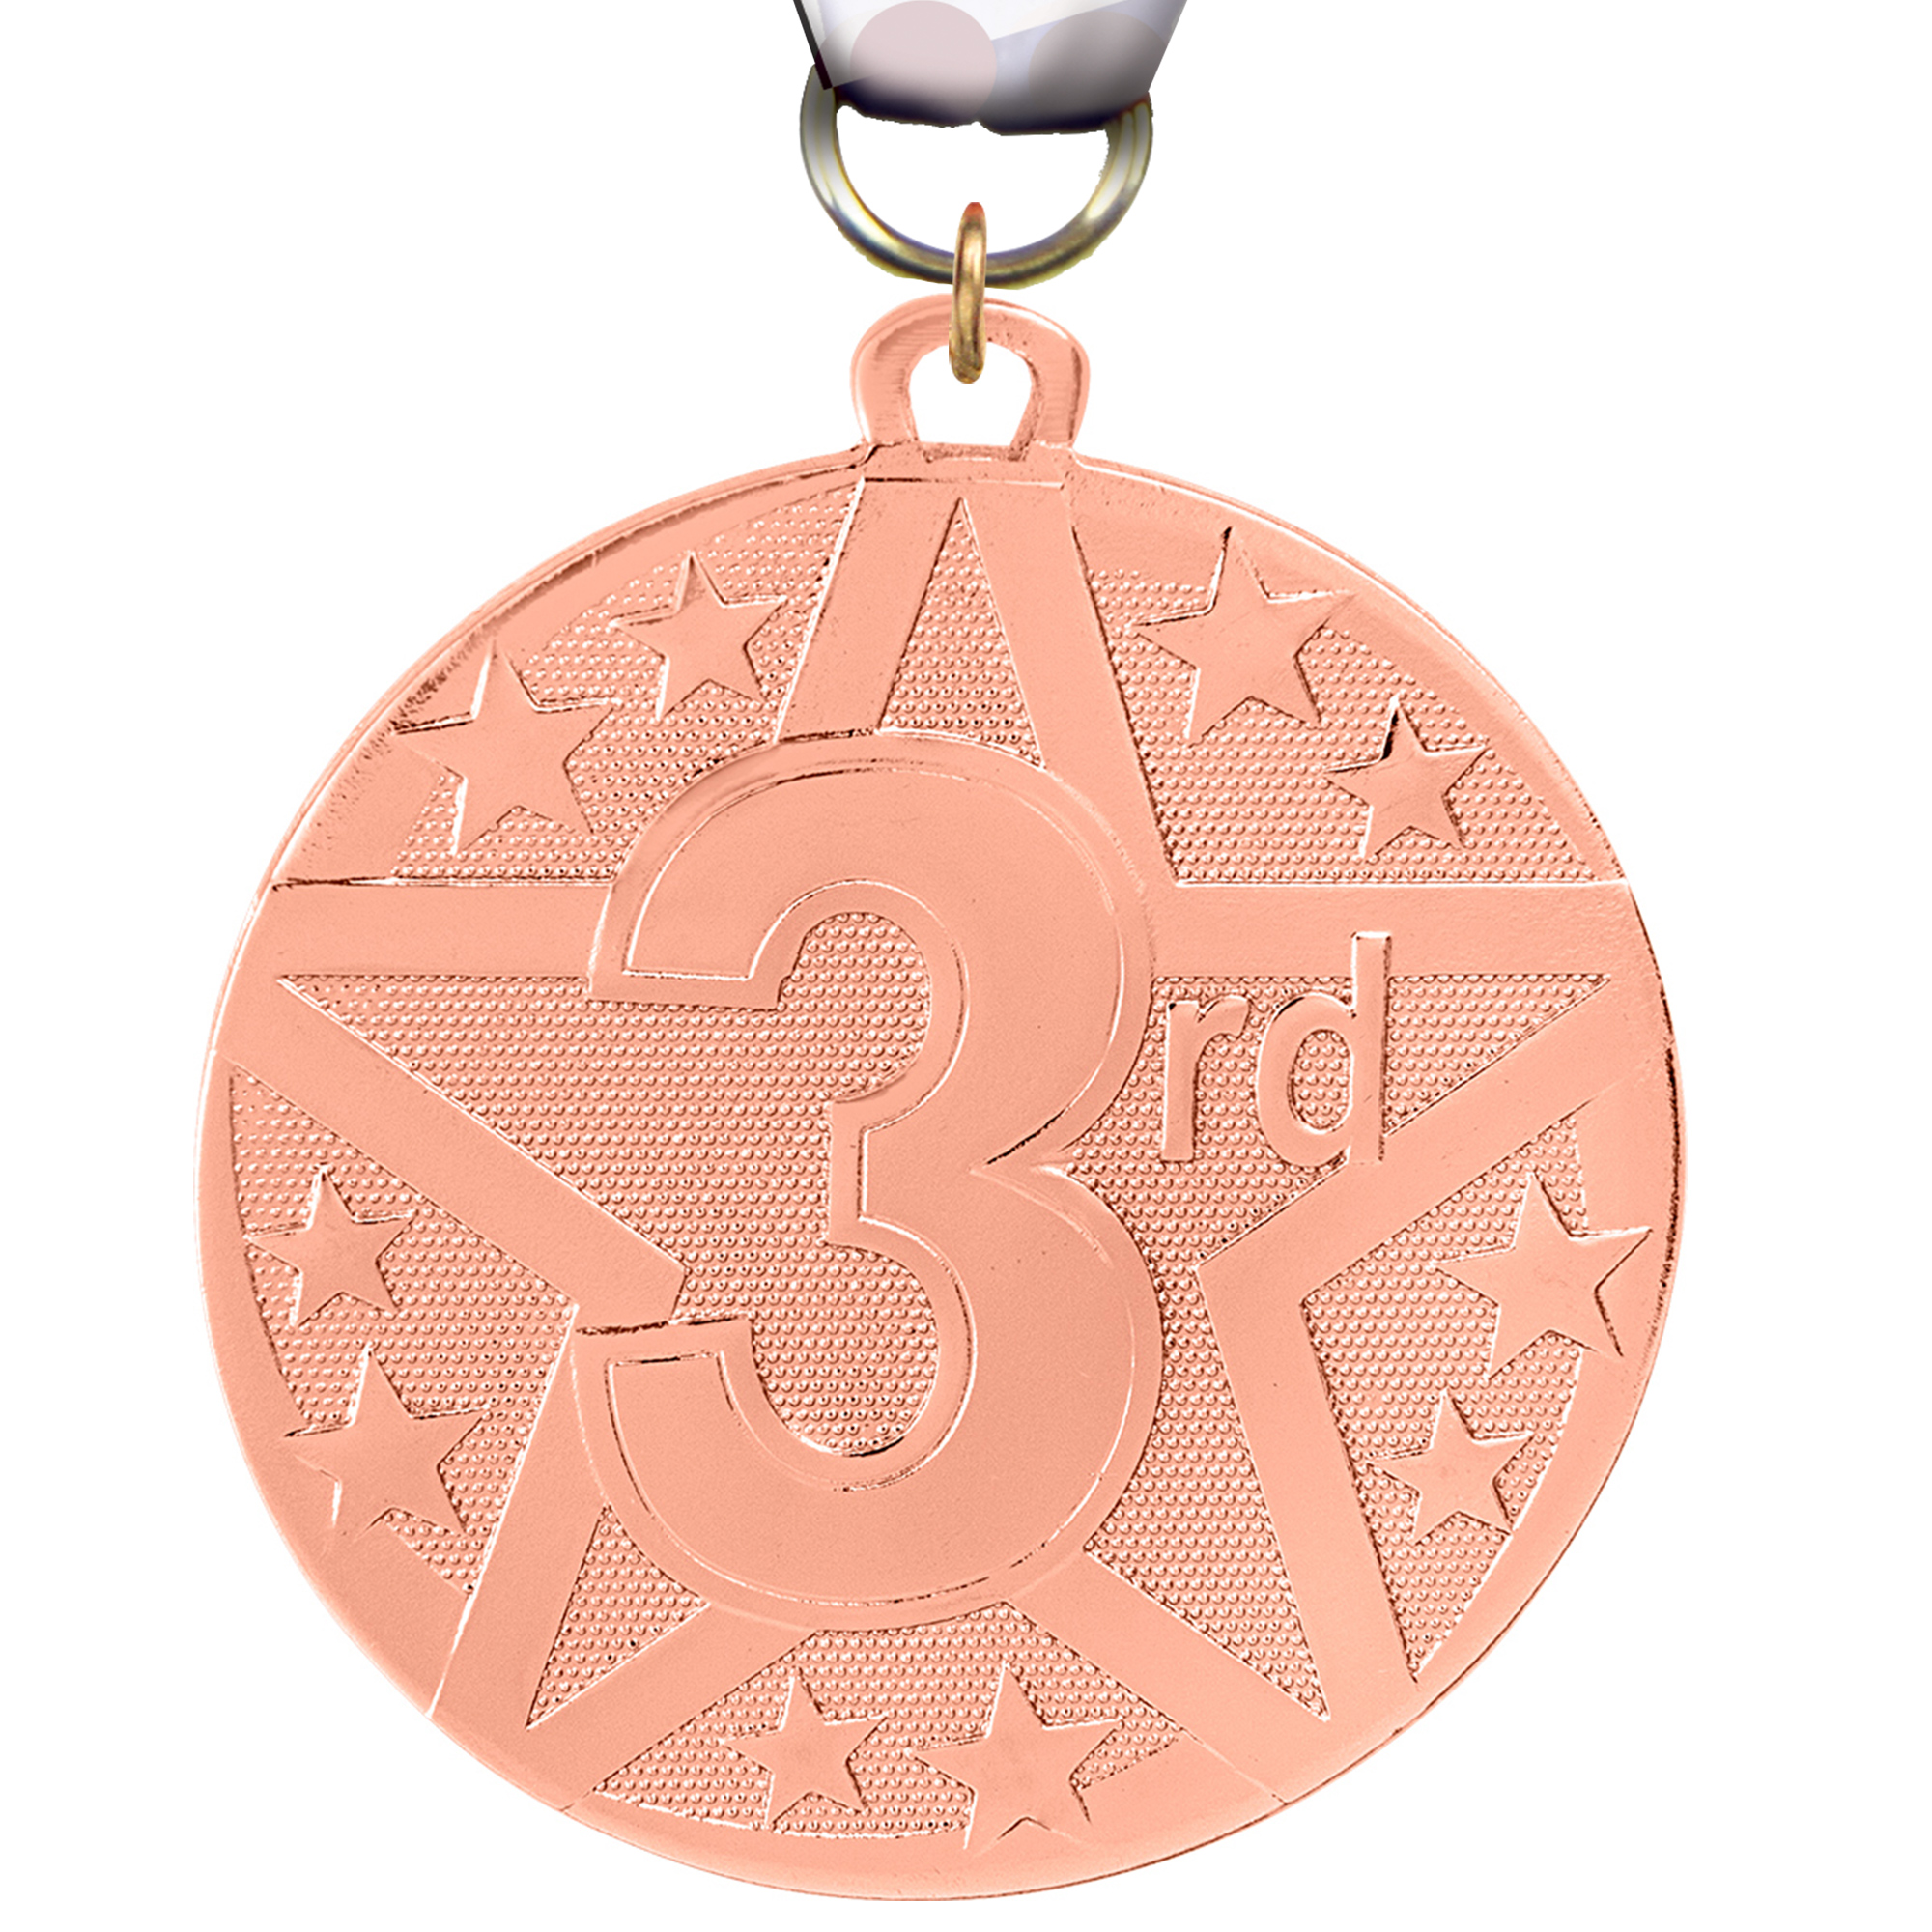 3rd Bright Superstar Medal